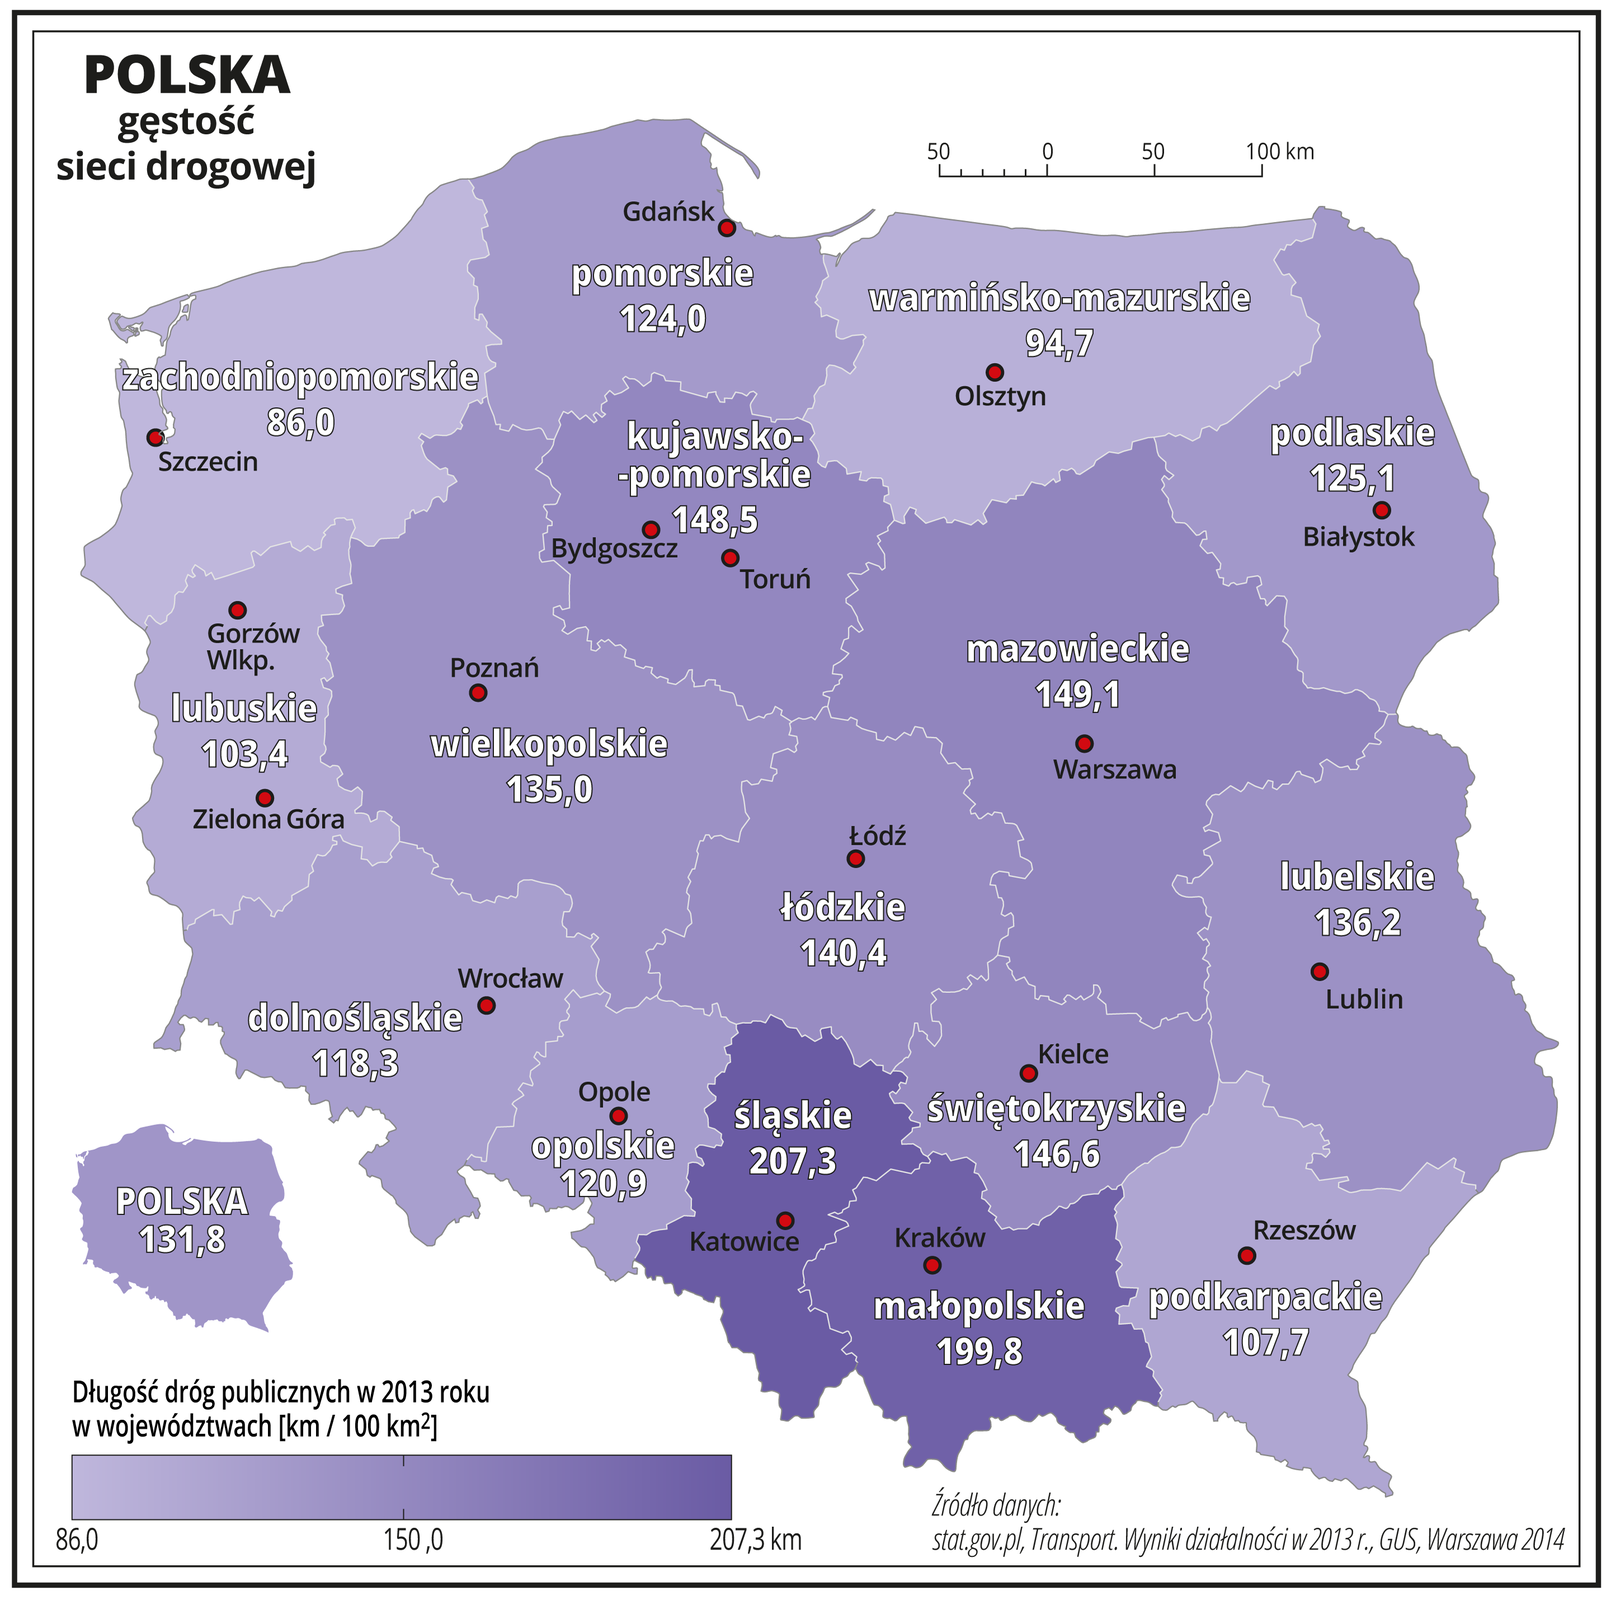 Ilustracja przedstawia mapę Polski z podziałem na województwa i obrazuje gęstość sieci drogowej. Granice województw zaznaczone są białą linią. Powierzchnie województw mają kolor fioletowy, użyto kilku odcieni – od jasnofioletowego do ciemnofioletowego. Nasyceniem kolorów przedstawiono długość dróg publicznych w dwa tysiące trzynastym roku w województwach w kilometrach na sto kilometrów kwadratowych. Dodatkowo w każdym województwie zapisano liczbę obrazującą długość tych dróg. Najniższa wartość przedstawiona na mapie to osiemdziesiąt sześć kilometrów dróg na sto kilometrów kwadratowych – w województwie zachodniopomorskim. Największa wartość (najciemniejszy odcień) to dwieście siedem i trzy dziesiąte kilometra dróg na sto kilometrów kwadratowych – w województwie śląskim i sto dziewięćdziesiąt dziewięć i osiem dziesiątych kilometra w województwie małopolskim. Pozostałe województwa mają od ponad dziewięćdziesięciu do blisko stu pięćdziesięciu kilometrów dróg na sto kilometrów kwadratowych powierzchni. Czerwonymi kropkami zaznaczono miasta wojewódzkie. Po lewej stronie mapy na dole w legendzie umieszczono cieniowany kolorem fioletowym pasek. Z lewej strony kolor jest najjaśniejszy i opisany osiemdziesiąt sześć, a z prawej najciemniejszy i opisany dwieście siedem i trzy dziesiąte kilometra. Z lewej strony mapy na dole umieszczono miniaturę mapy Polski ze średnią wartością gęstości dróg publicznych – sto trzydzieści jeden przecinek osiem dziesiątych kilometra dróg na sto kilometrów kwadratowych.